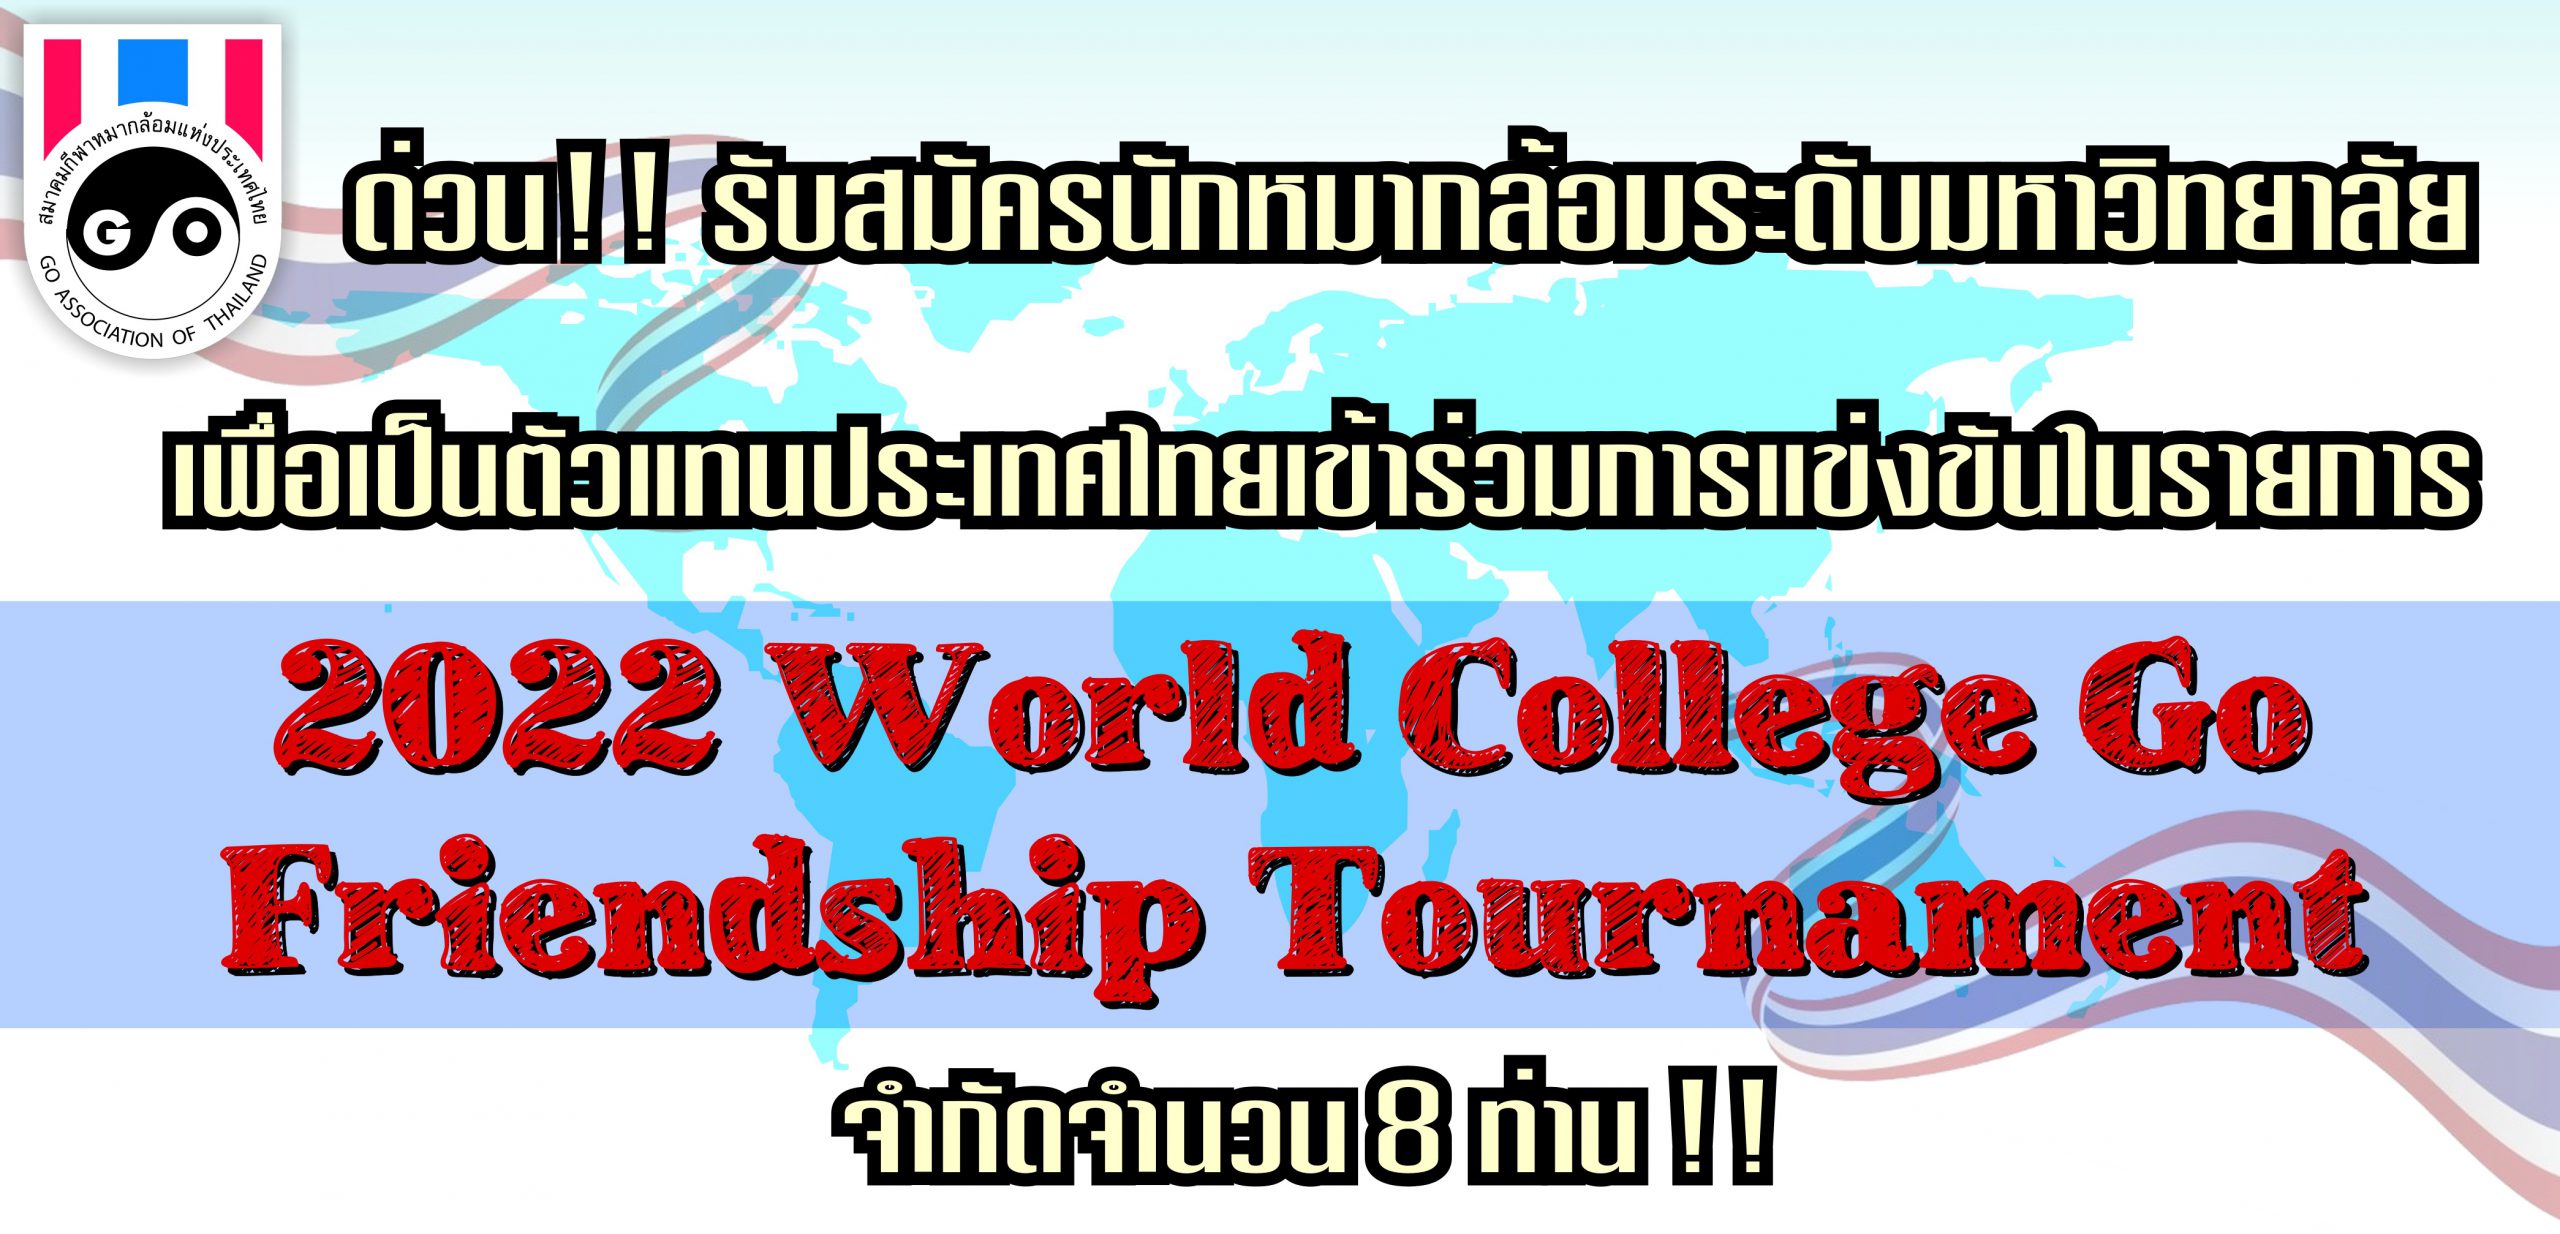 รับสมัครนักหมากล้อมระดับมหาวิทยาลัยเข้าแข่งรายการ 2022 World College Go Friendship Tournament